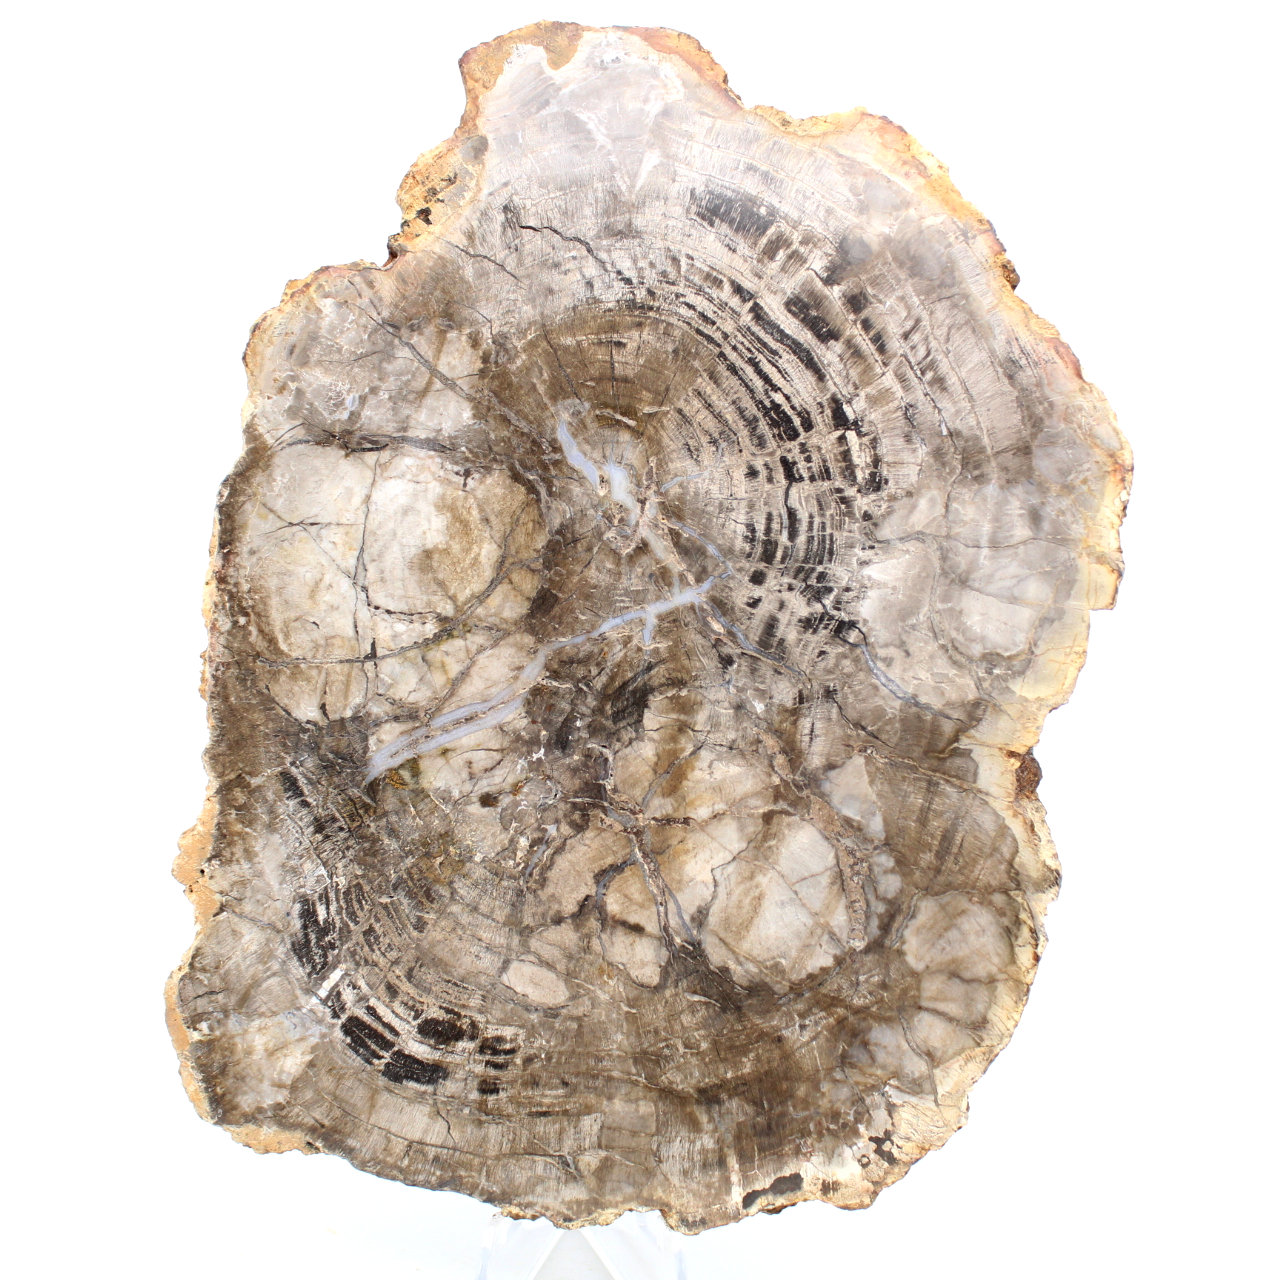 Polished fossilized wood from Madagascar